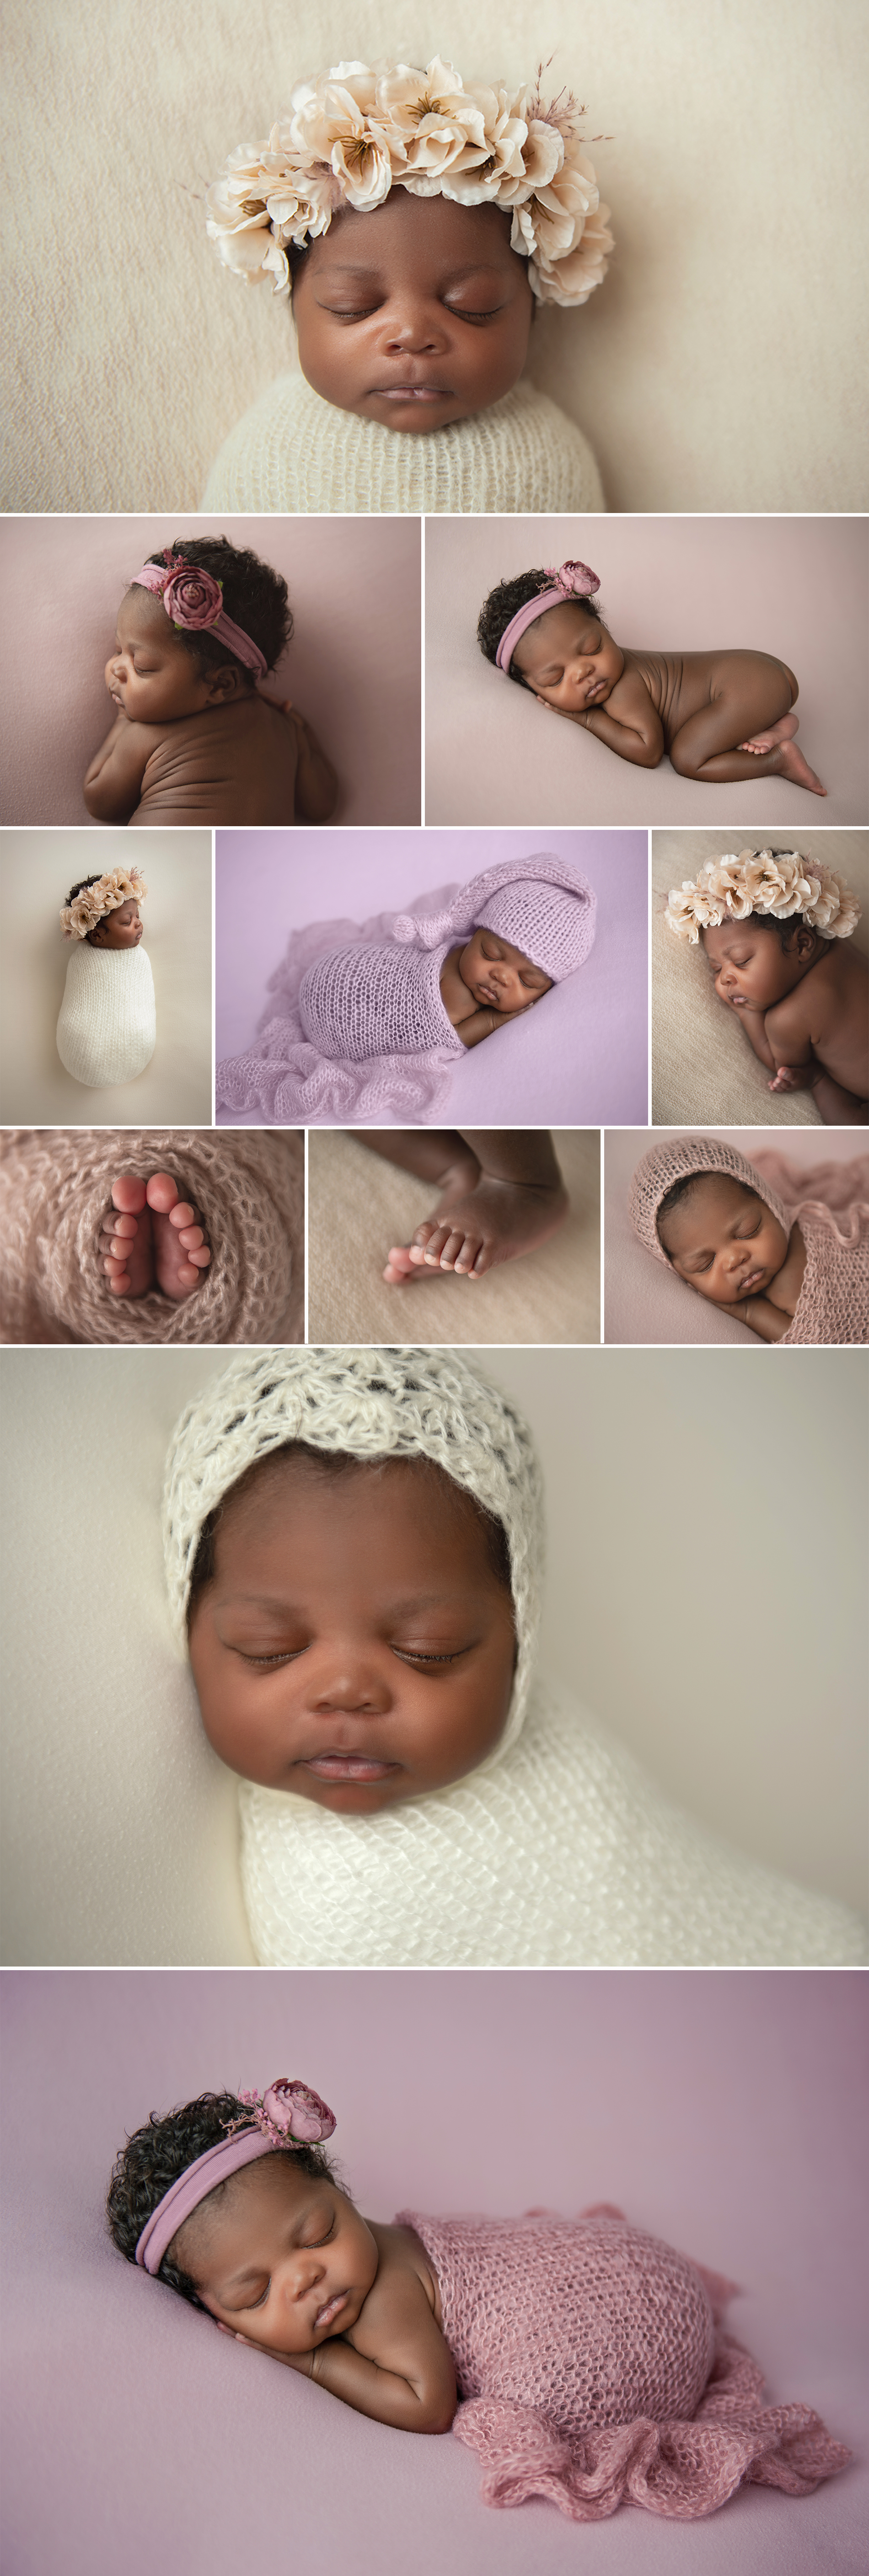 nyc boho newborn baby studio photoshoot